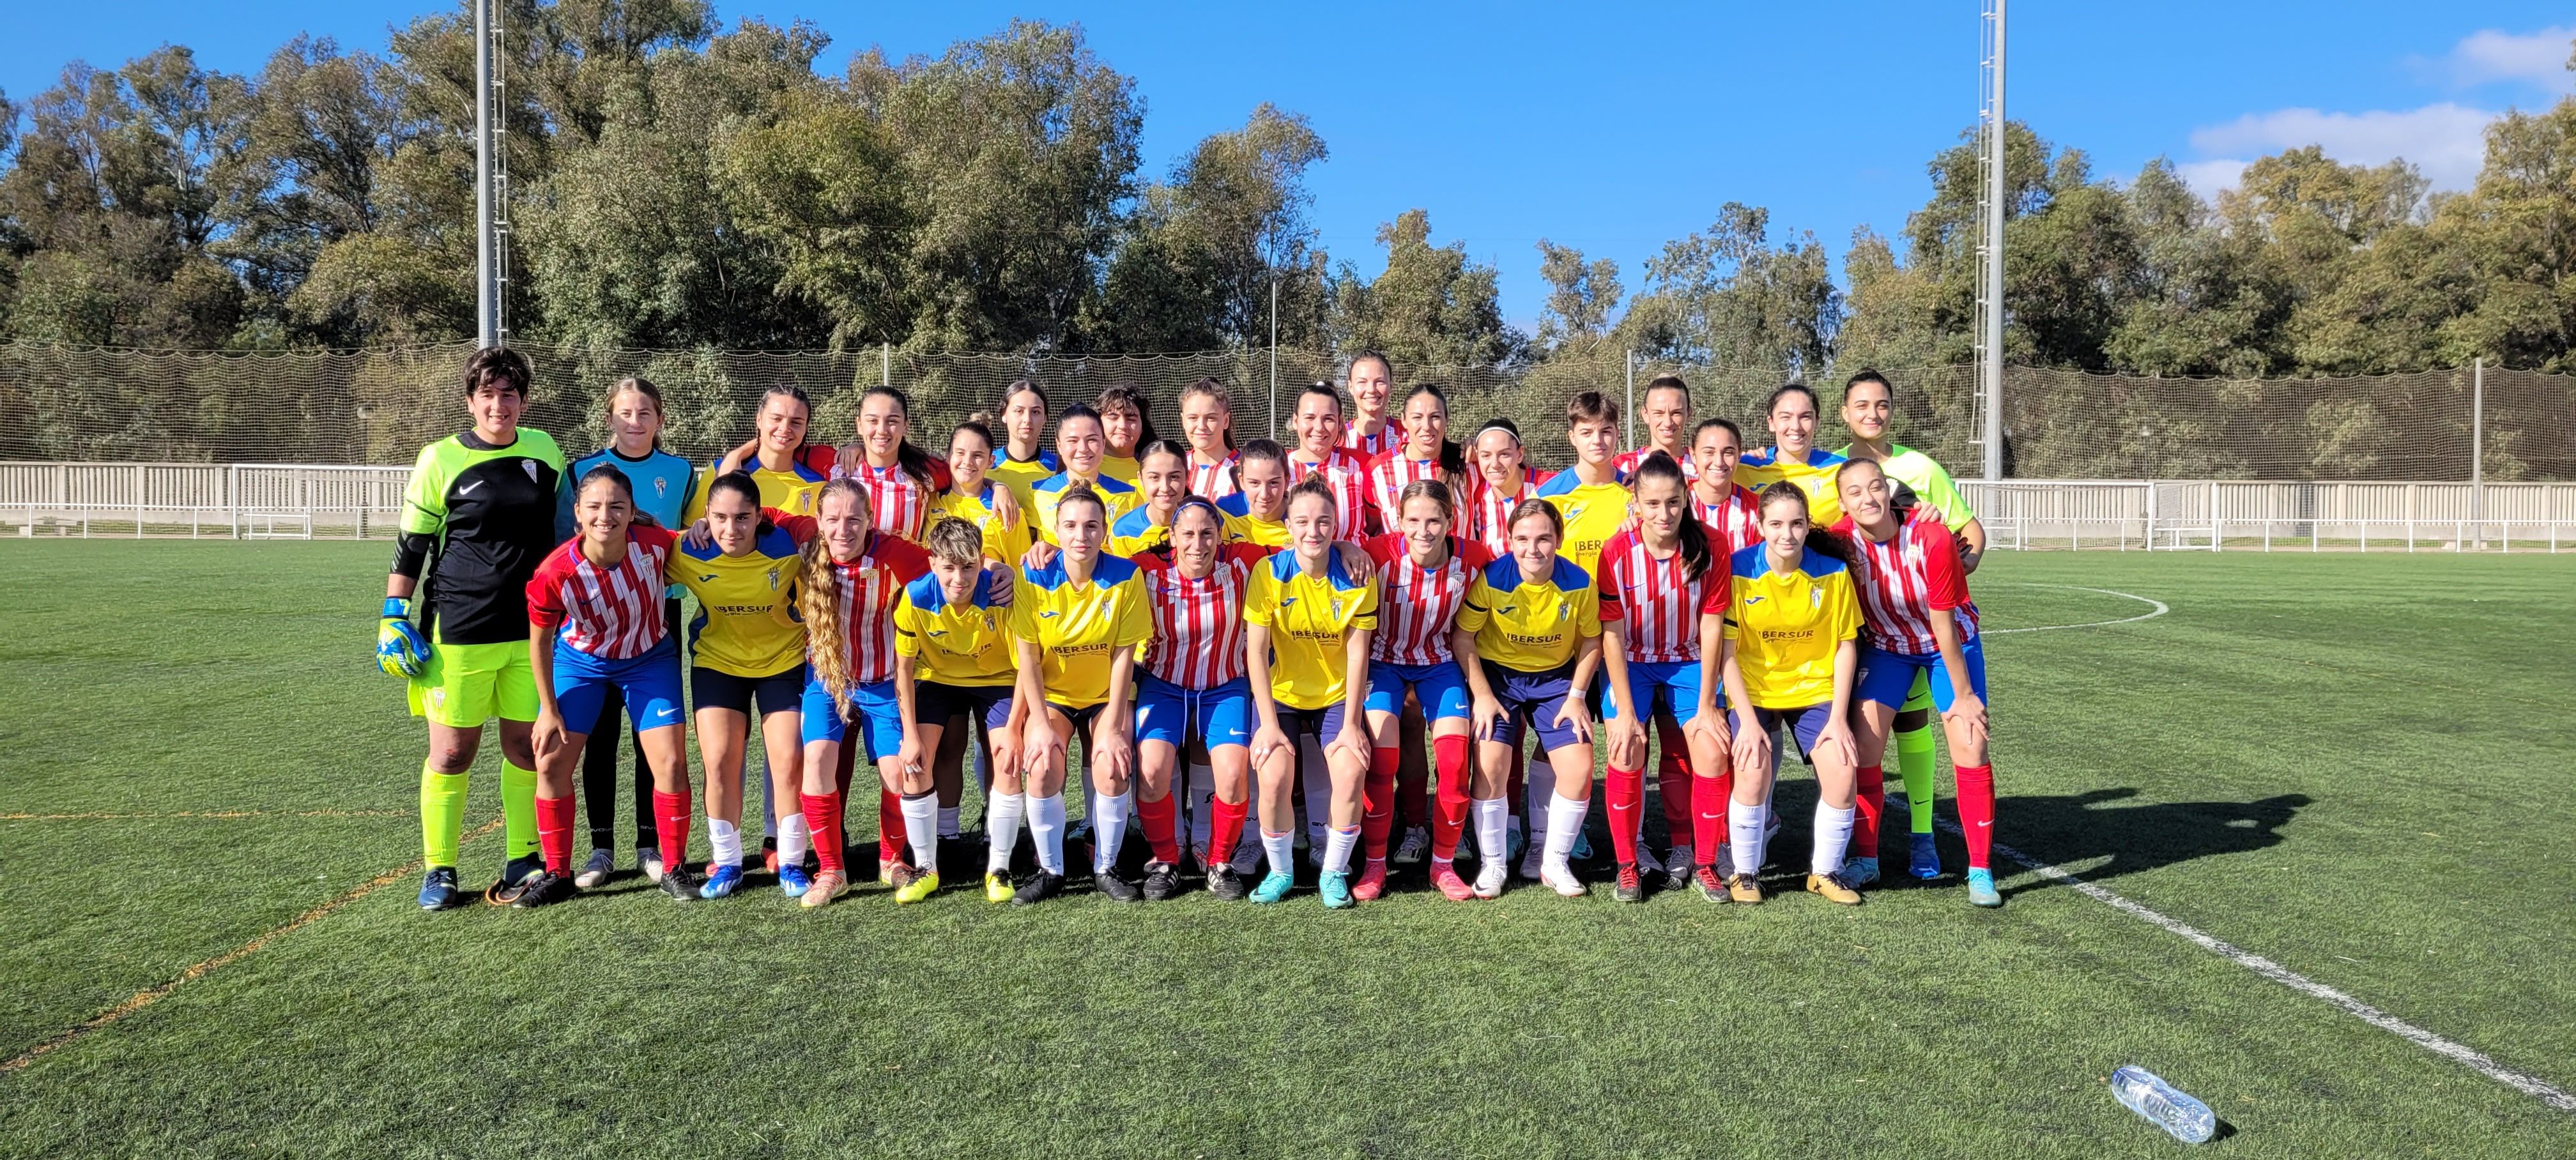 Deportivo Algeciras y Algeciras Club de Fútbol posan en una foto histórica: el primer derbi local senior femenino oficial/Foto: Axel S.C.